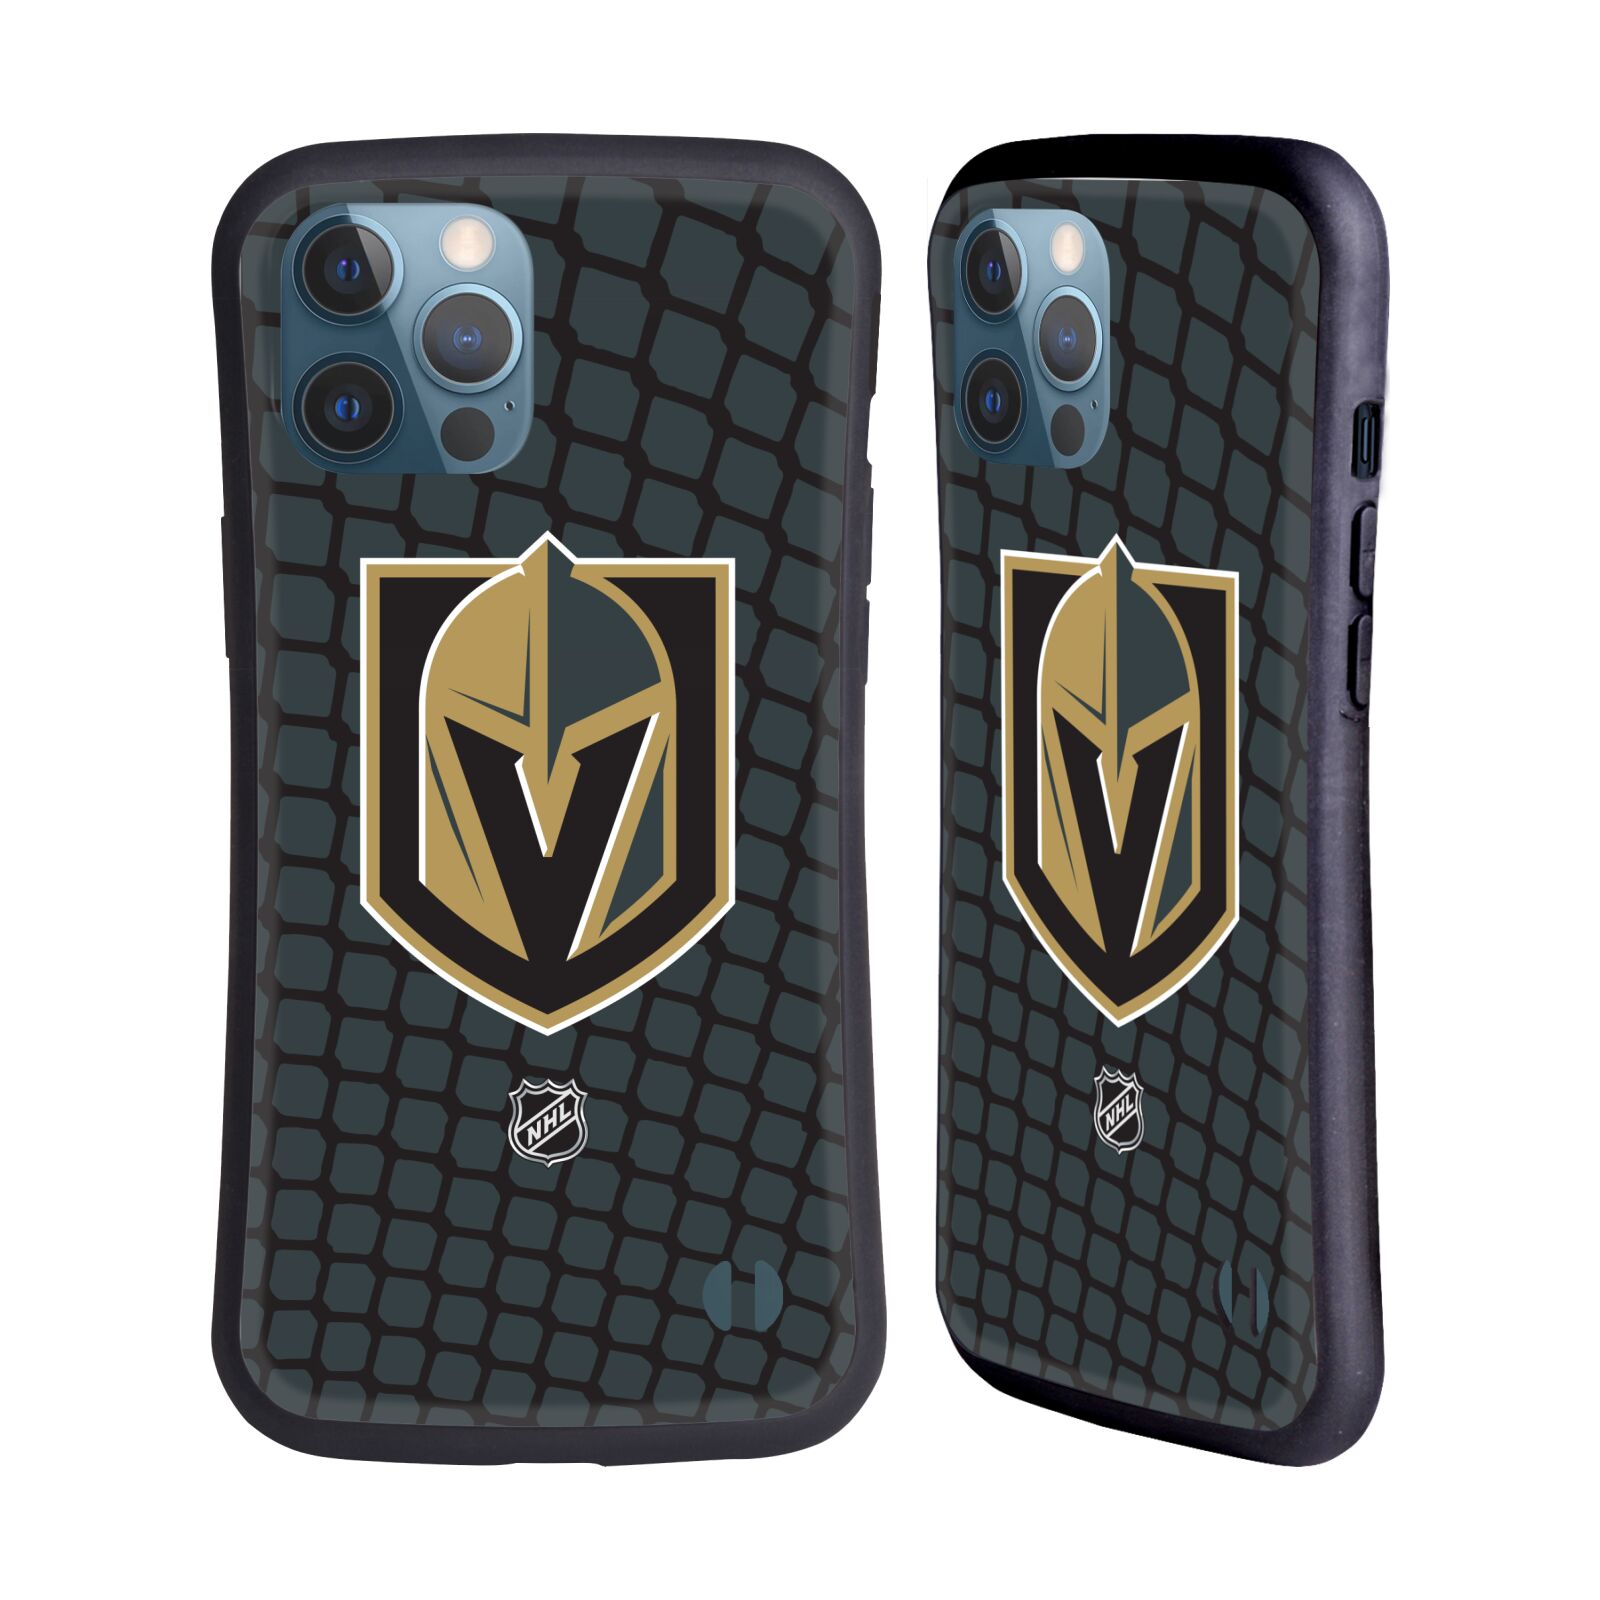 Obal na mobil Apple iPhone 12 PRO MAX - HEAD CASE - NHL - Branková síť Las Vegas Golden Knights